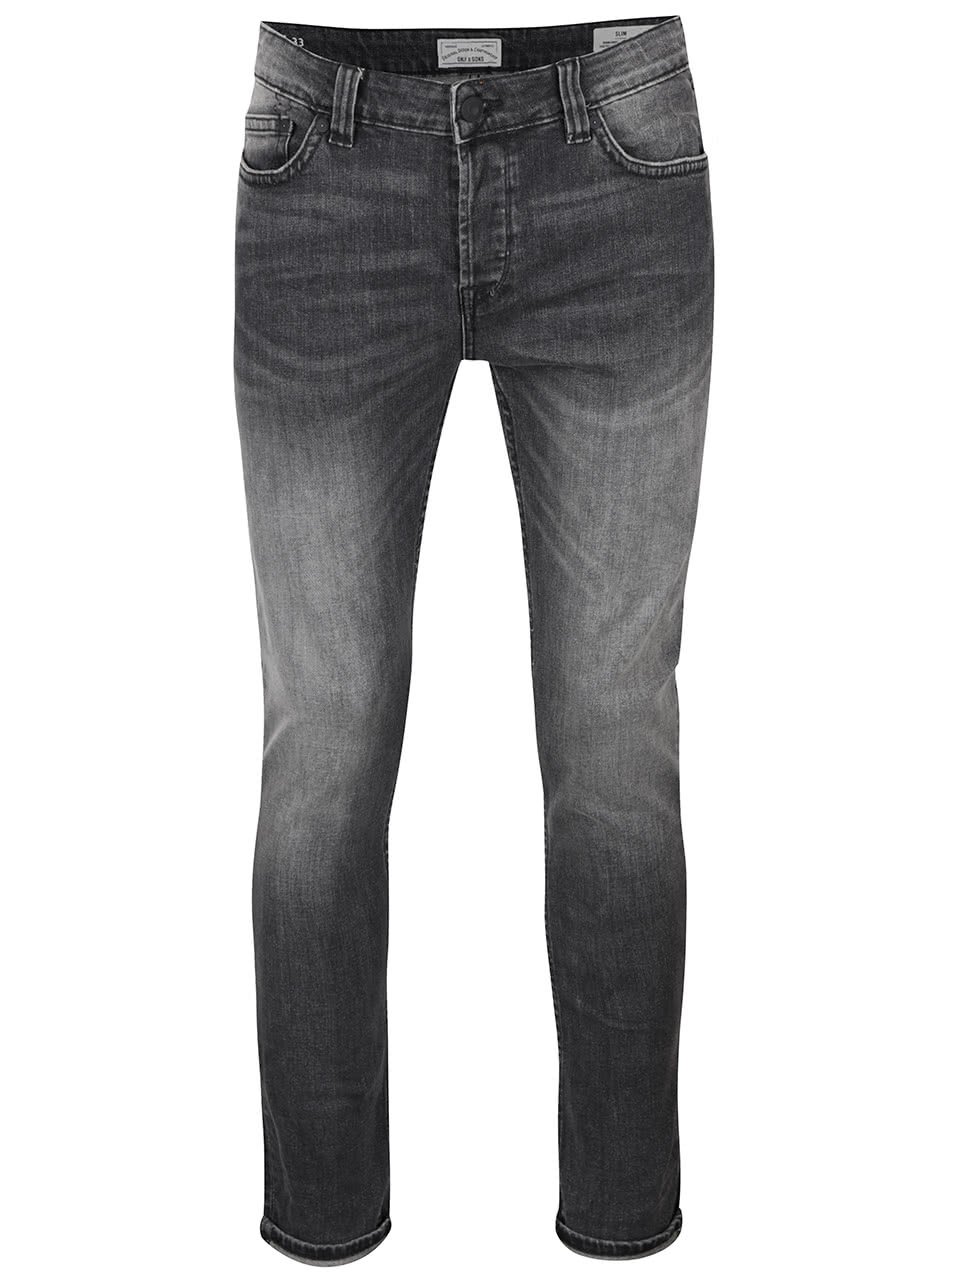 Tmavě šedé slim džíny s vyšisovaným efektem ONLY & SONS Loom